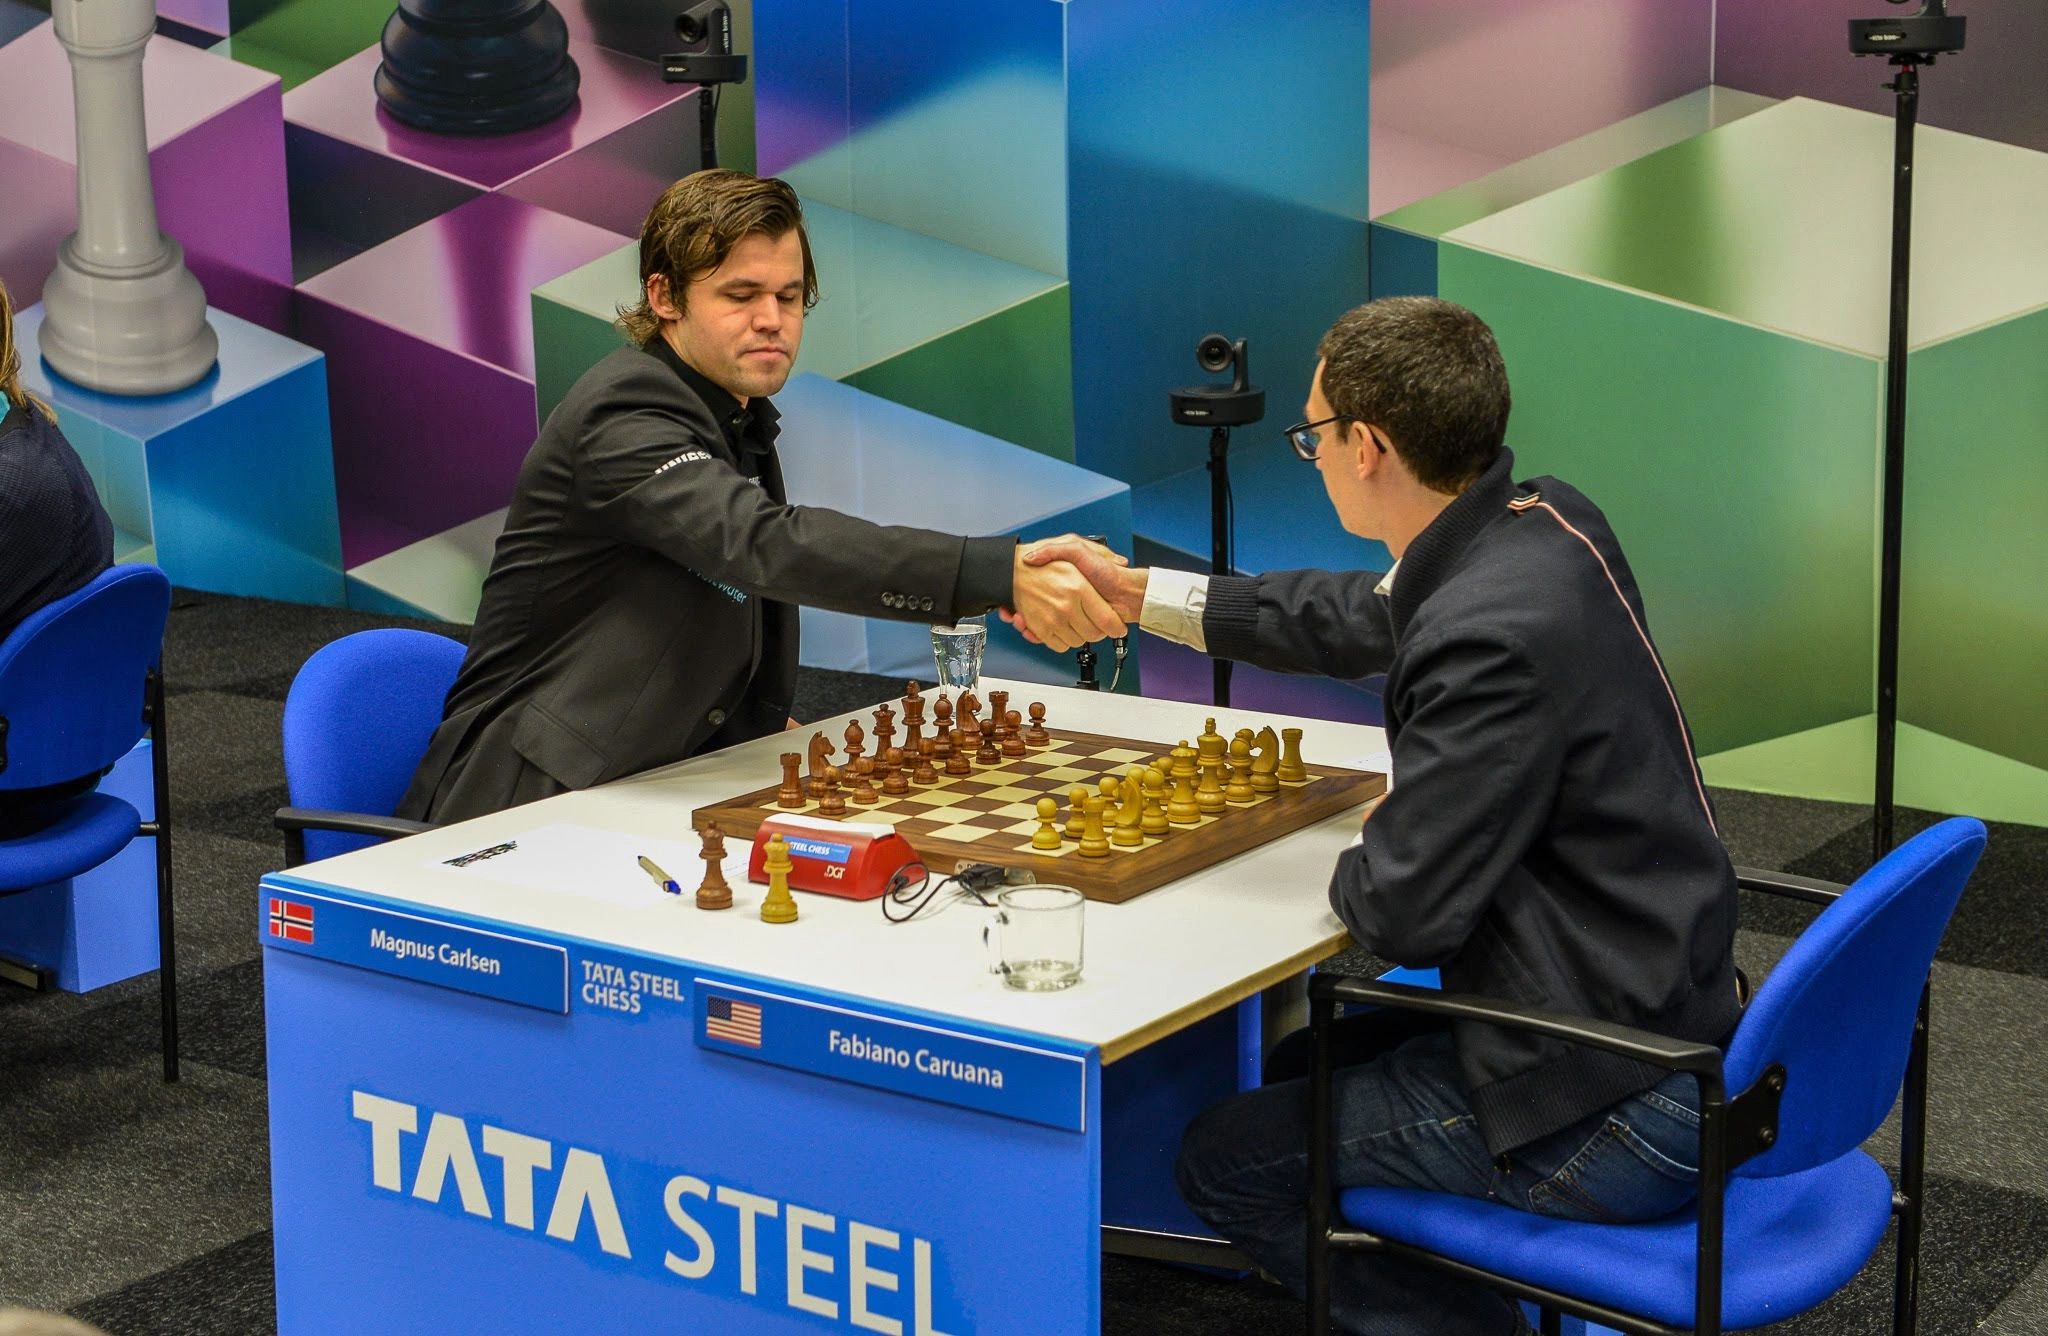 Tata Steel Chess 2023, Round 11